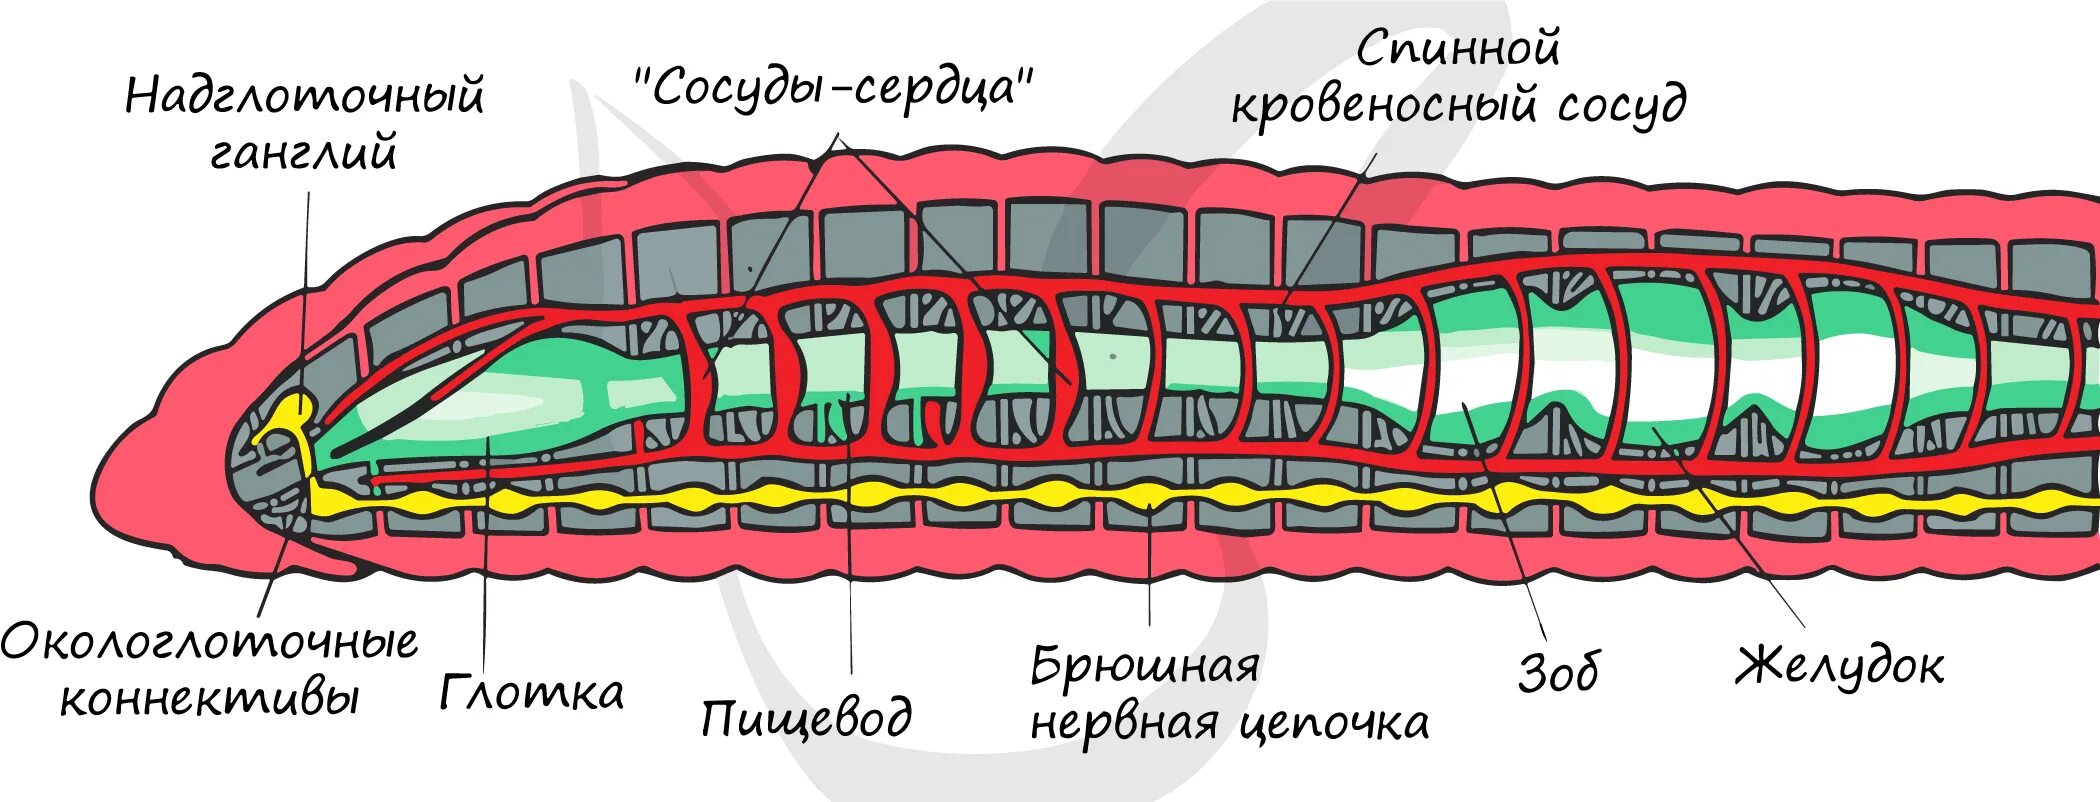 Внутреннее строение кольчатого червя рисунок. Кольчатые черви схема строения. Схема продольного разреза дождевого червя. Пищеварительная и выделительная система дождевого червя. Пищеварительная система органов кольчатых червей